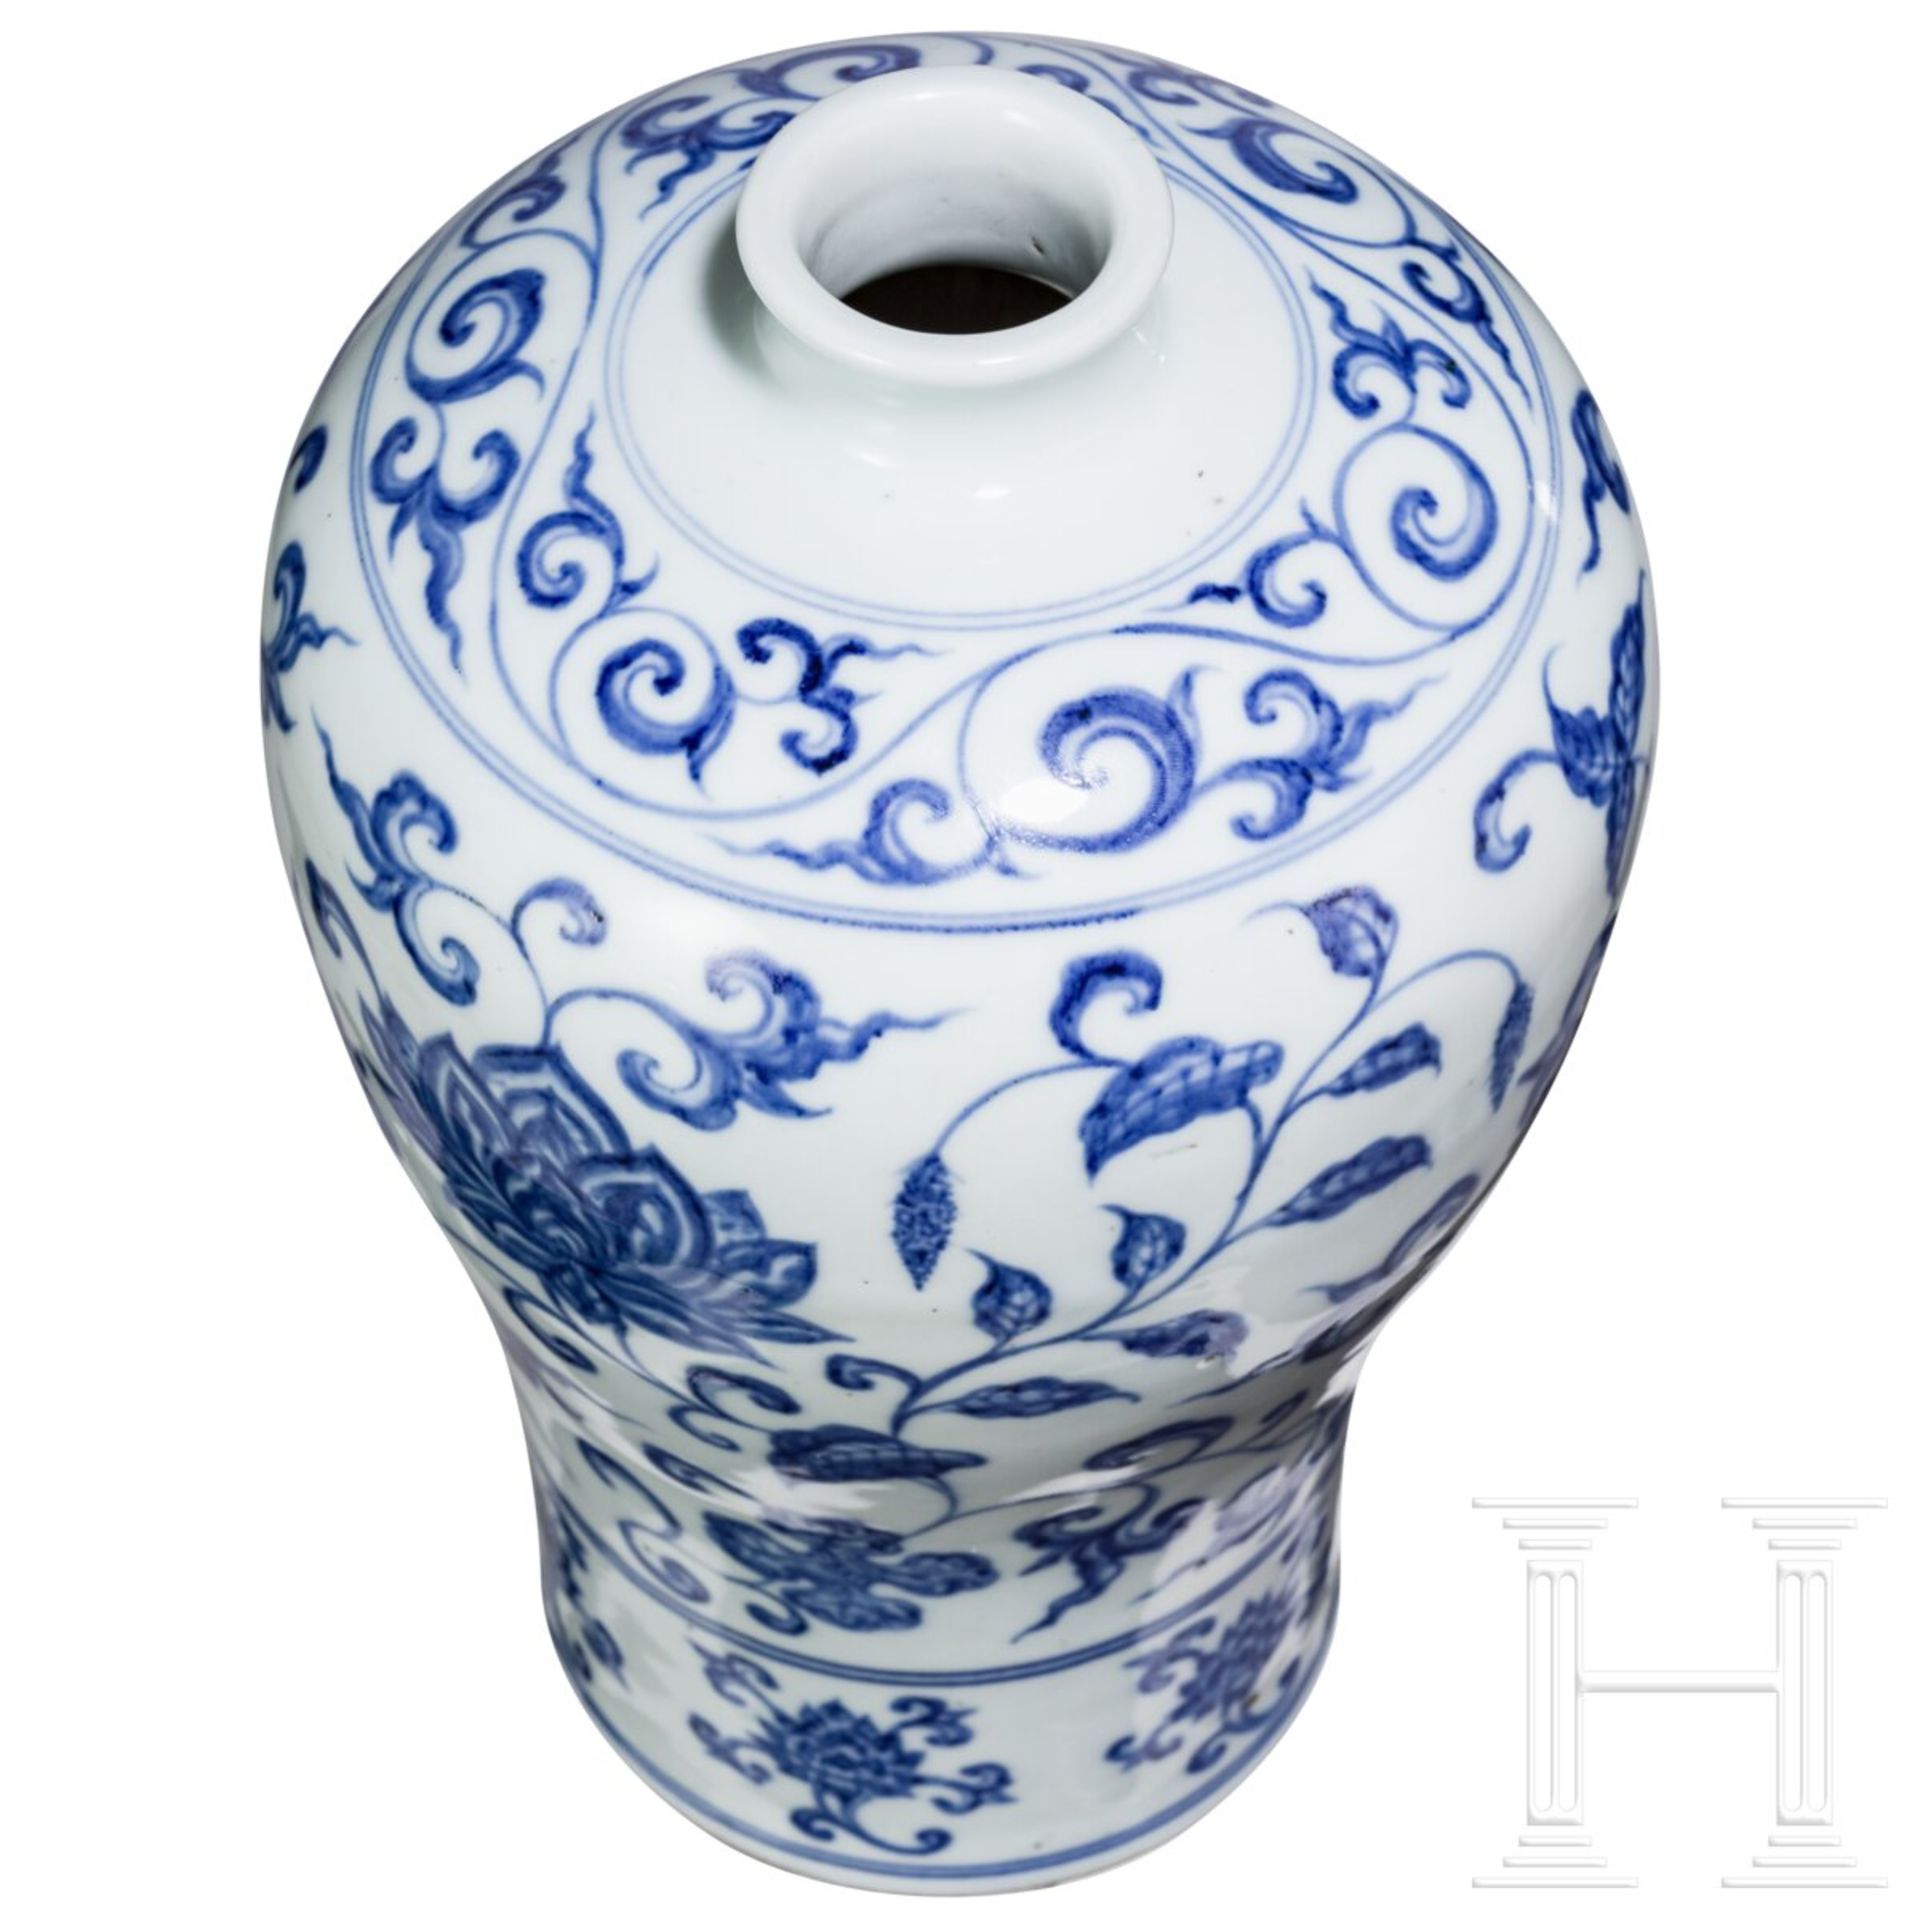 Blau-weiße Meiping-Vase im Ming-Stil, China, wahrscheinlich 19./20. Jhdt. - Bild 4 aus 16